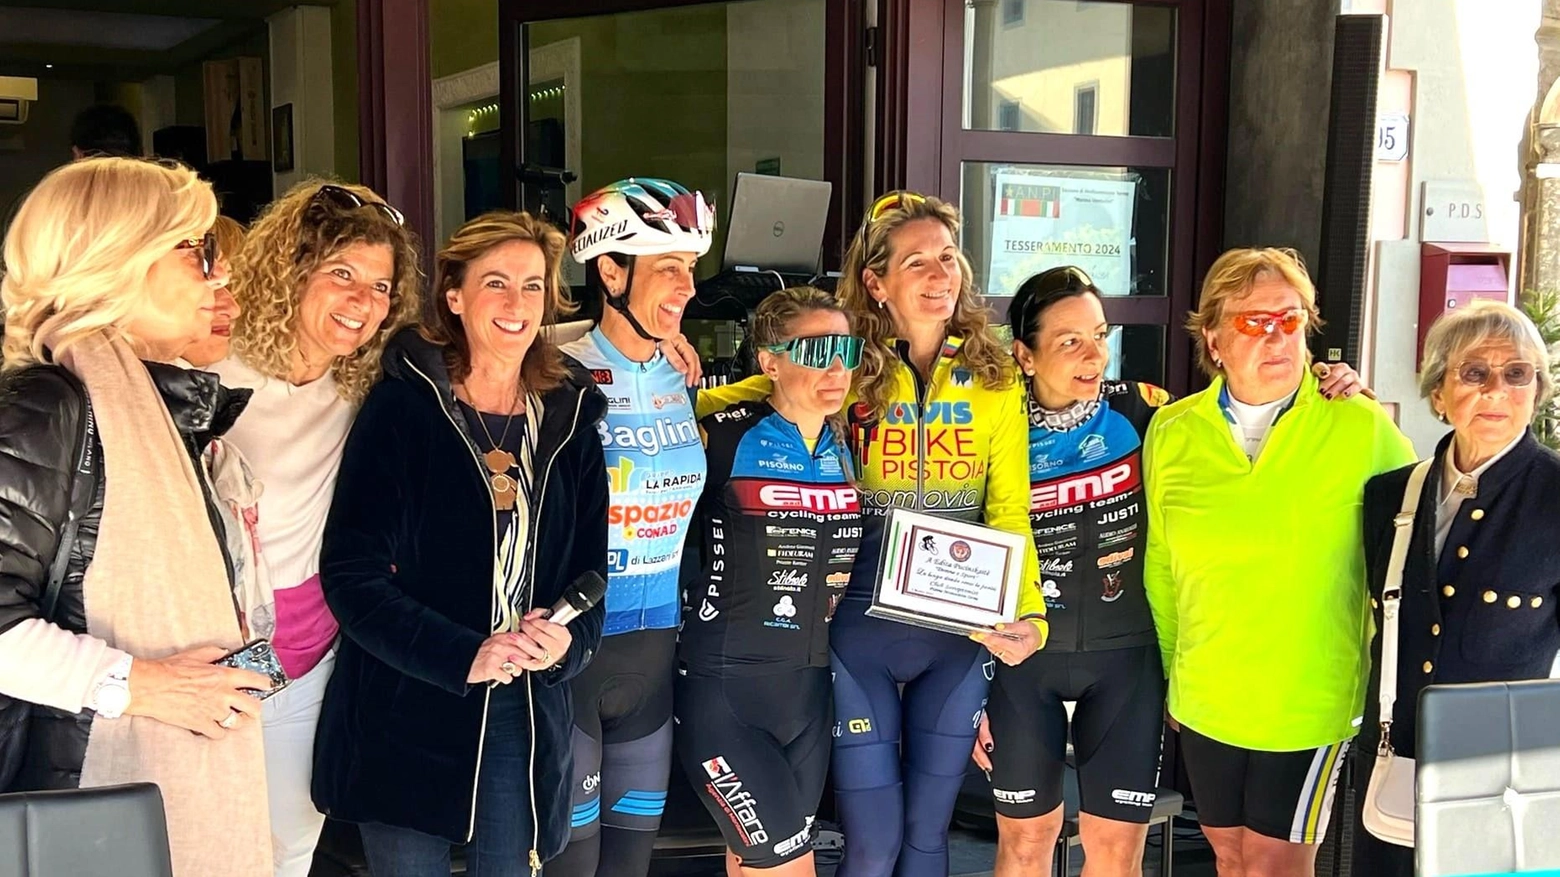 Successo per la prima edizione di "Only Girls" a Montecatini Terme, evento ciclistico femminile benefico organizzato dal Soroptimist Club. Progetto "Donne e Sport" punta alla parità di genere, ispirato anche al Centenario del Giro d'Italia.